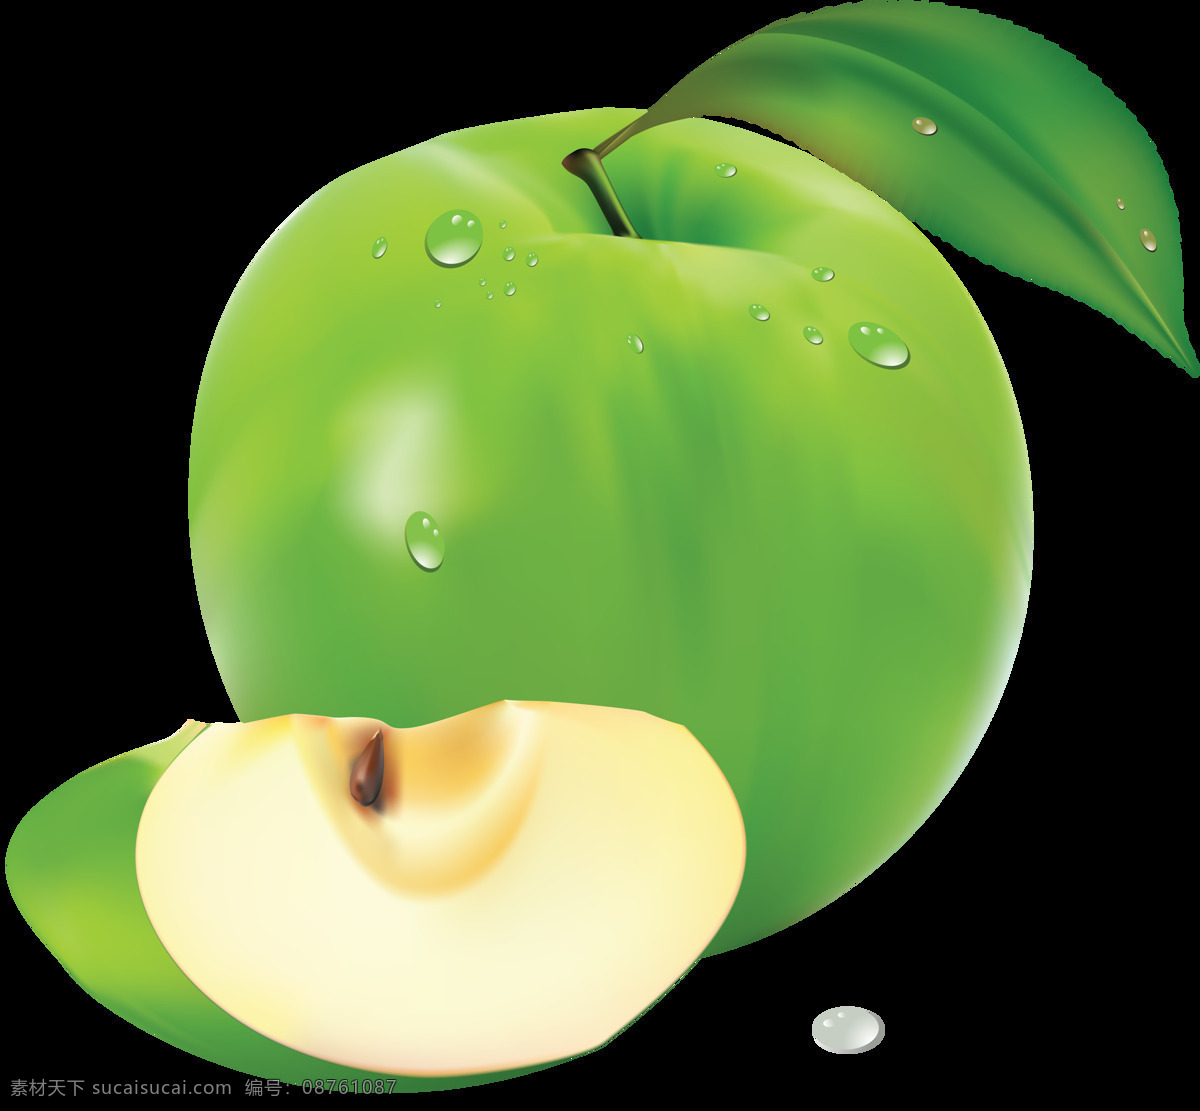 apple 创意水果 高清 露珠 美味 苹果 苹果设计素材 青苹果 苹果模板下载 水晶苹果 水珠 叶子 水果静物 水果 营养 新鲜 新鲜水果 特写 生物世界 psd源文件